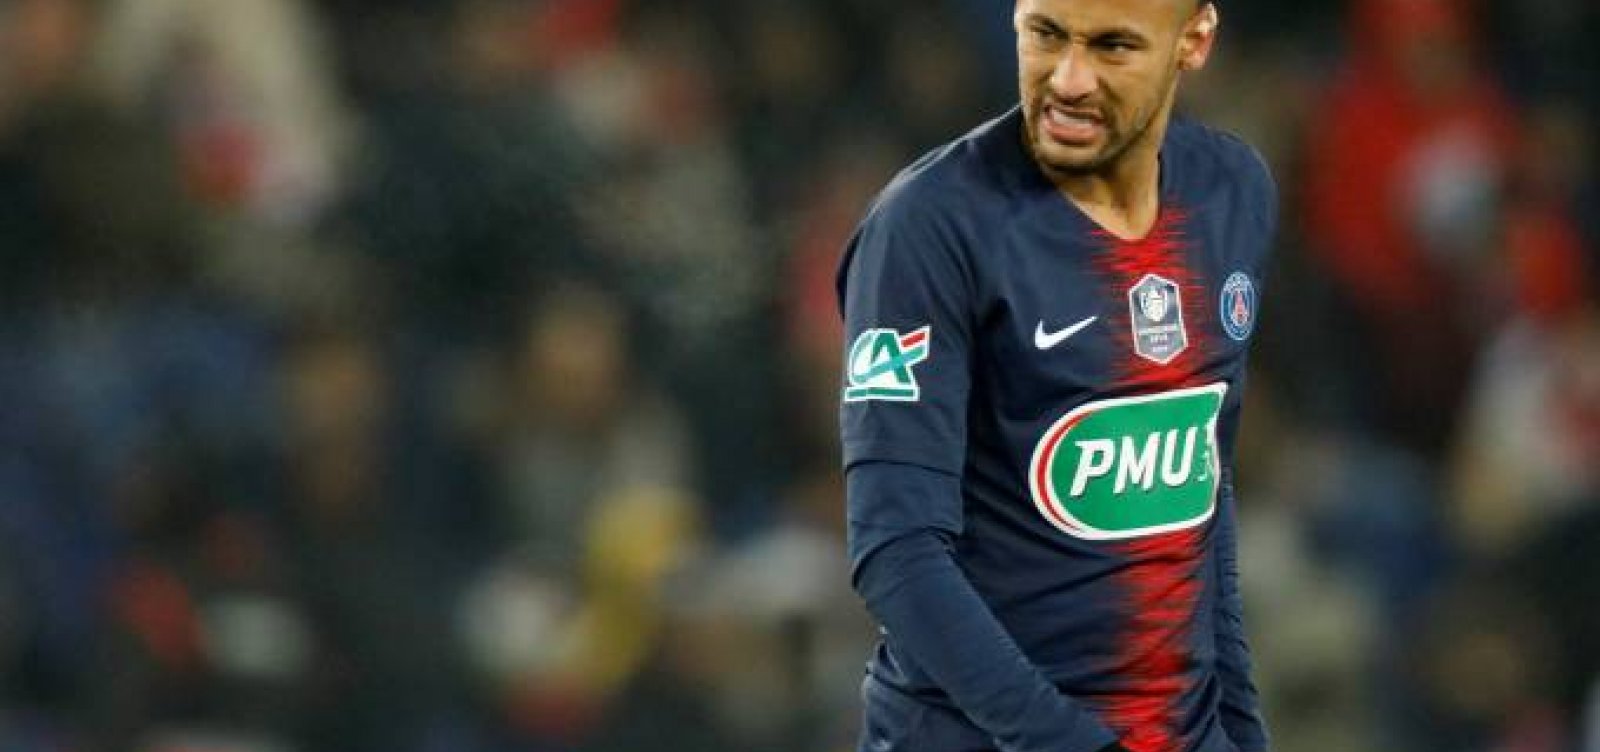 'Não quero mais jogar no PSG', diz Neymar a presidente do clube